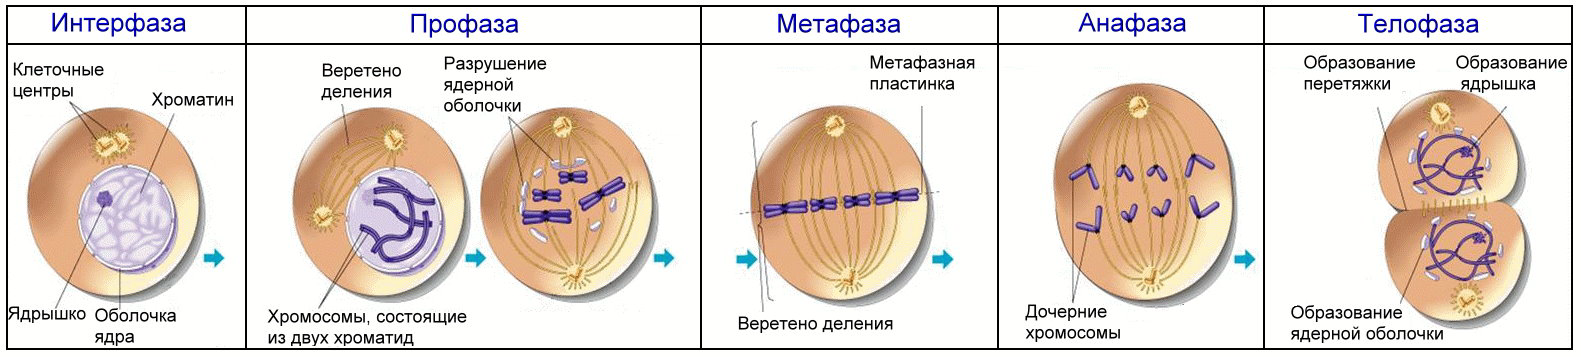 Аппарат деления клетки. Формирование веретена деления митоз. Фазы клеточного цикла митоза. Фаза деления клетки 4n4c.